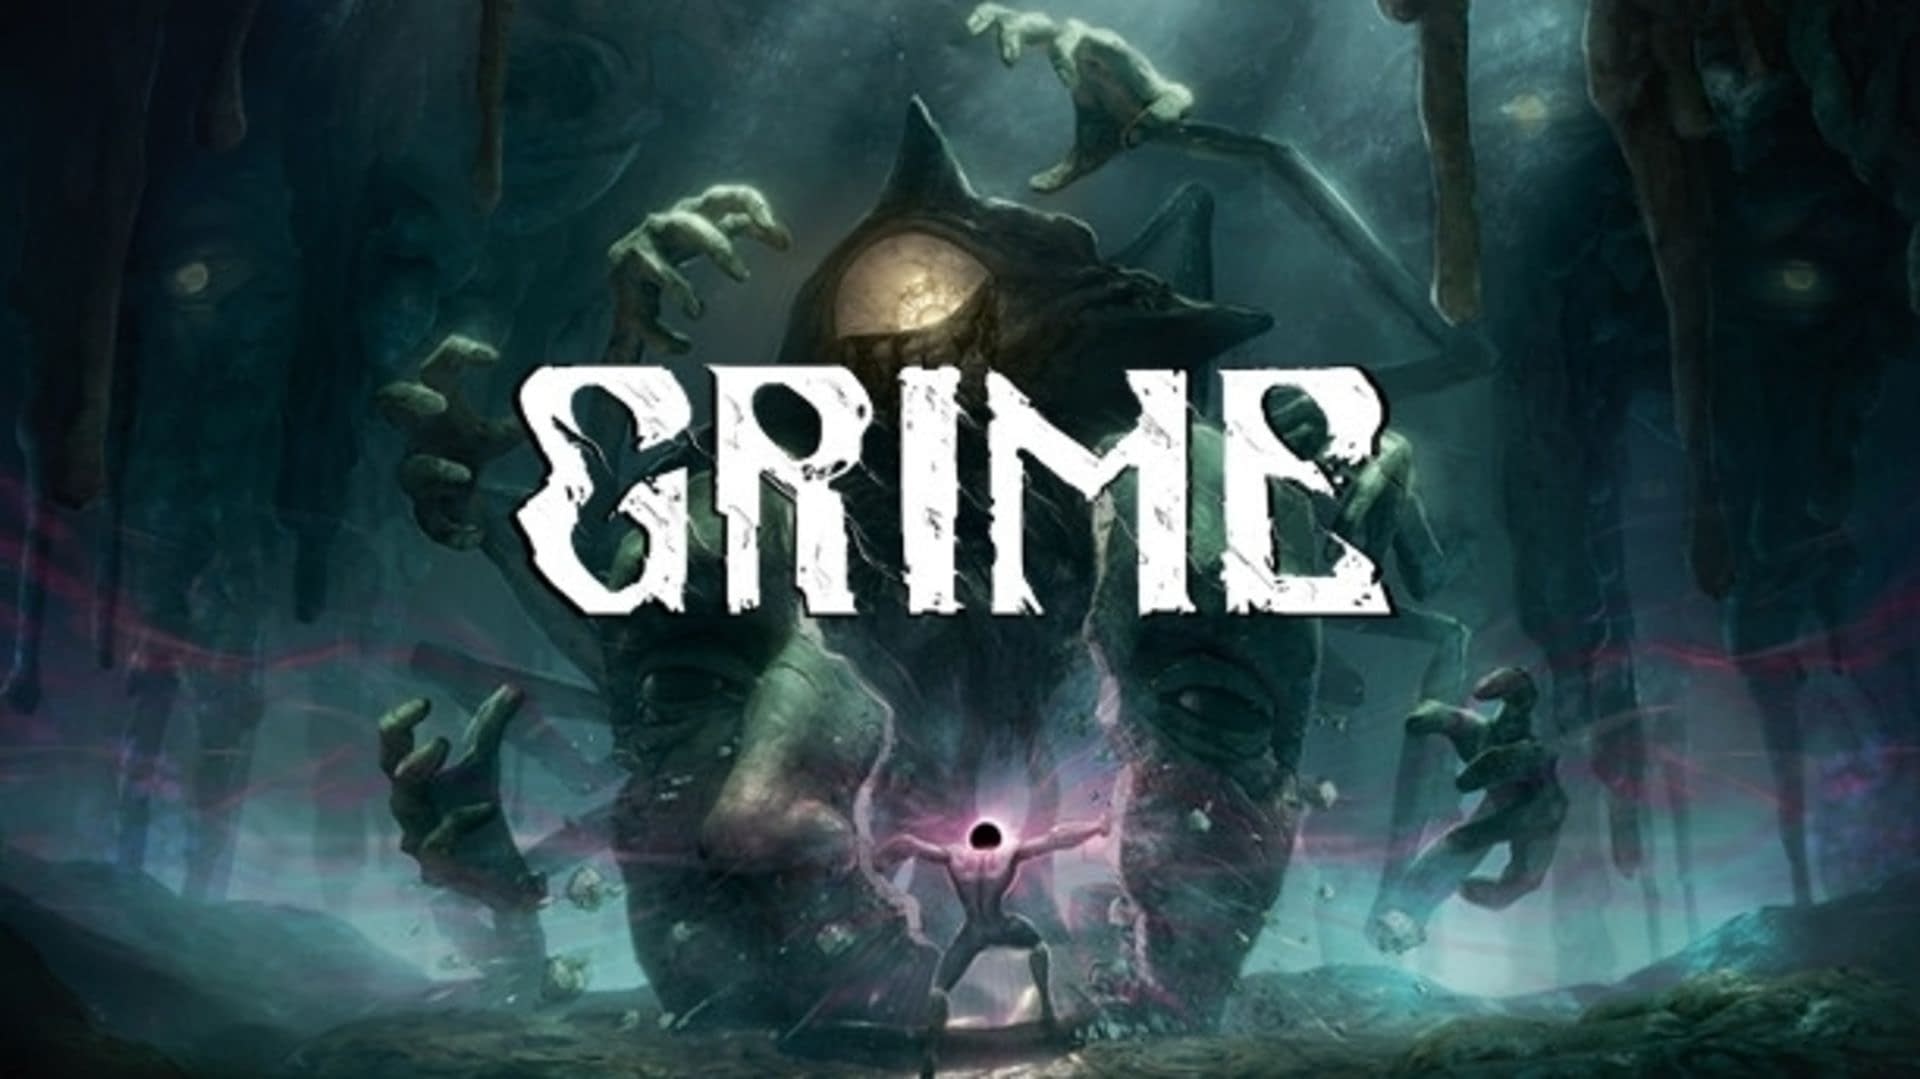 side renæssance Akvarium The Grime Soundtrack By Composer Alex Roe Is Now Available